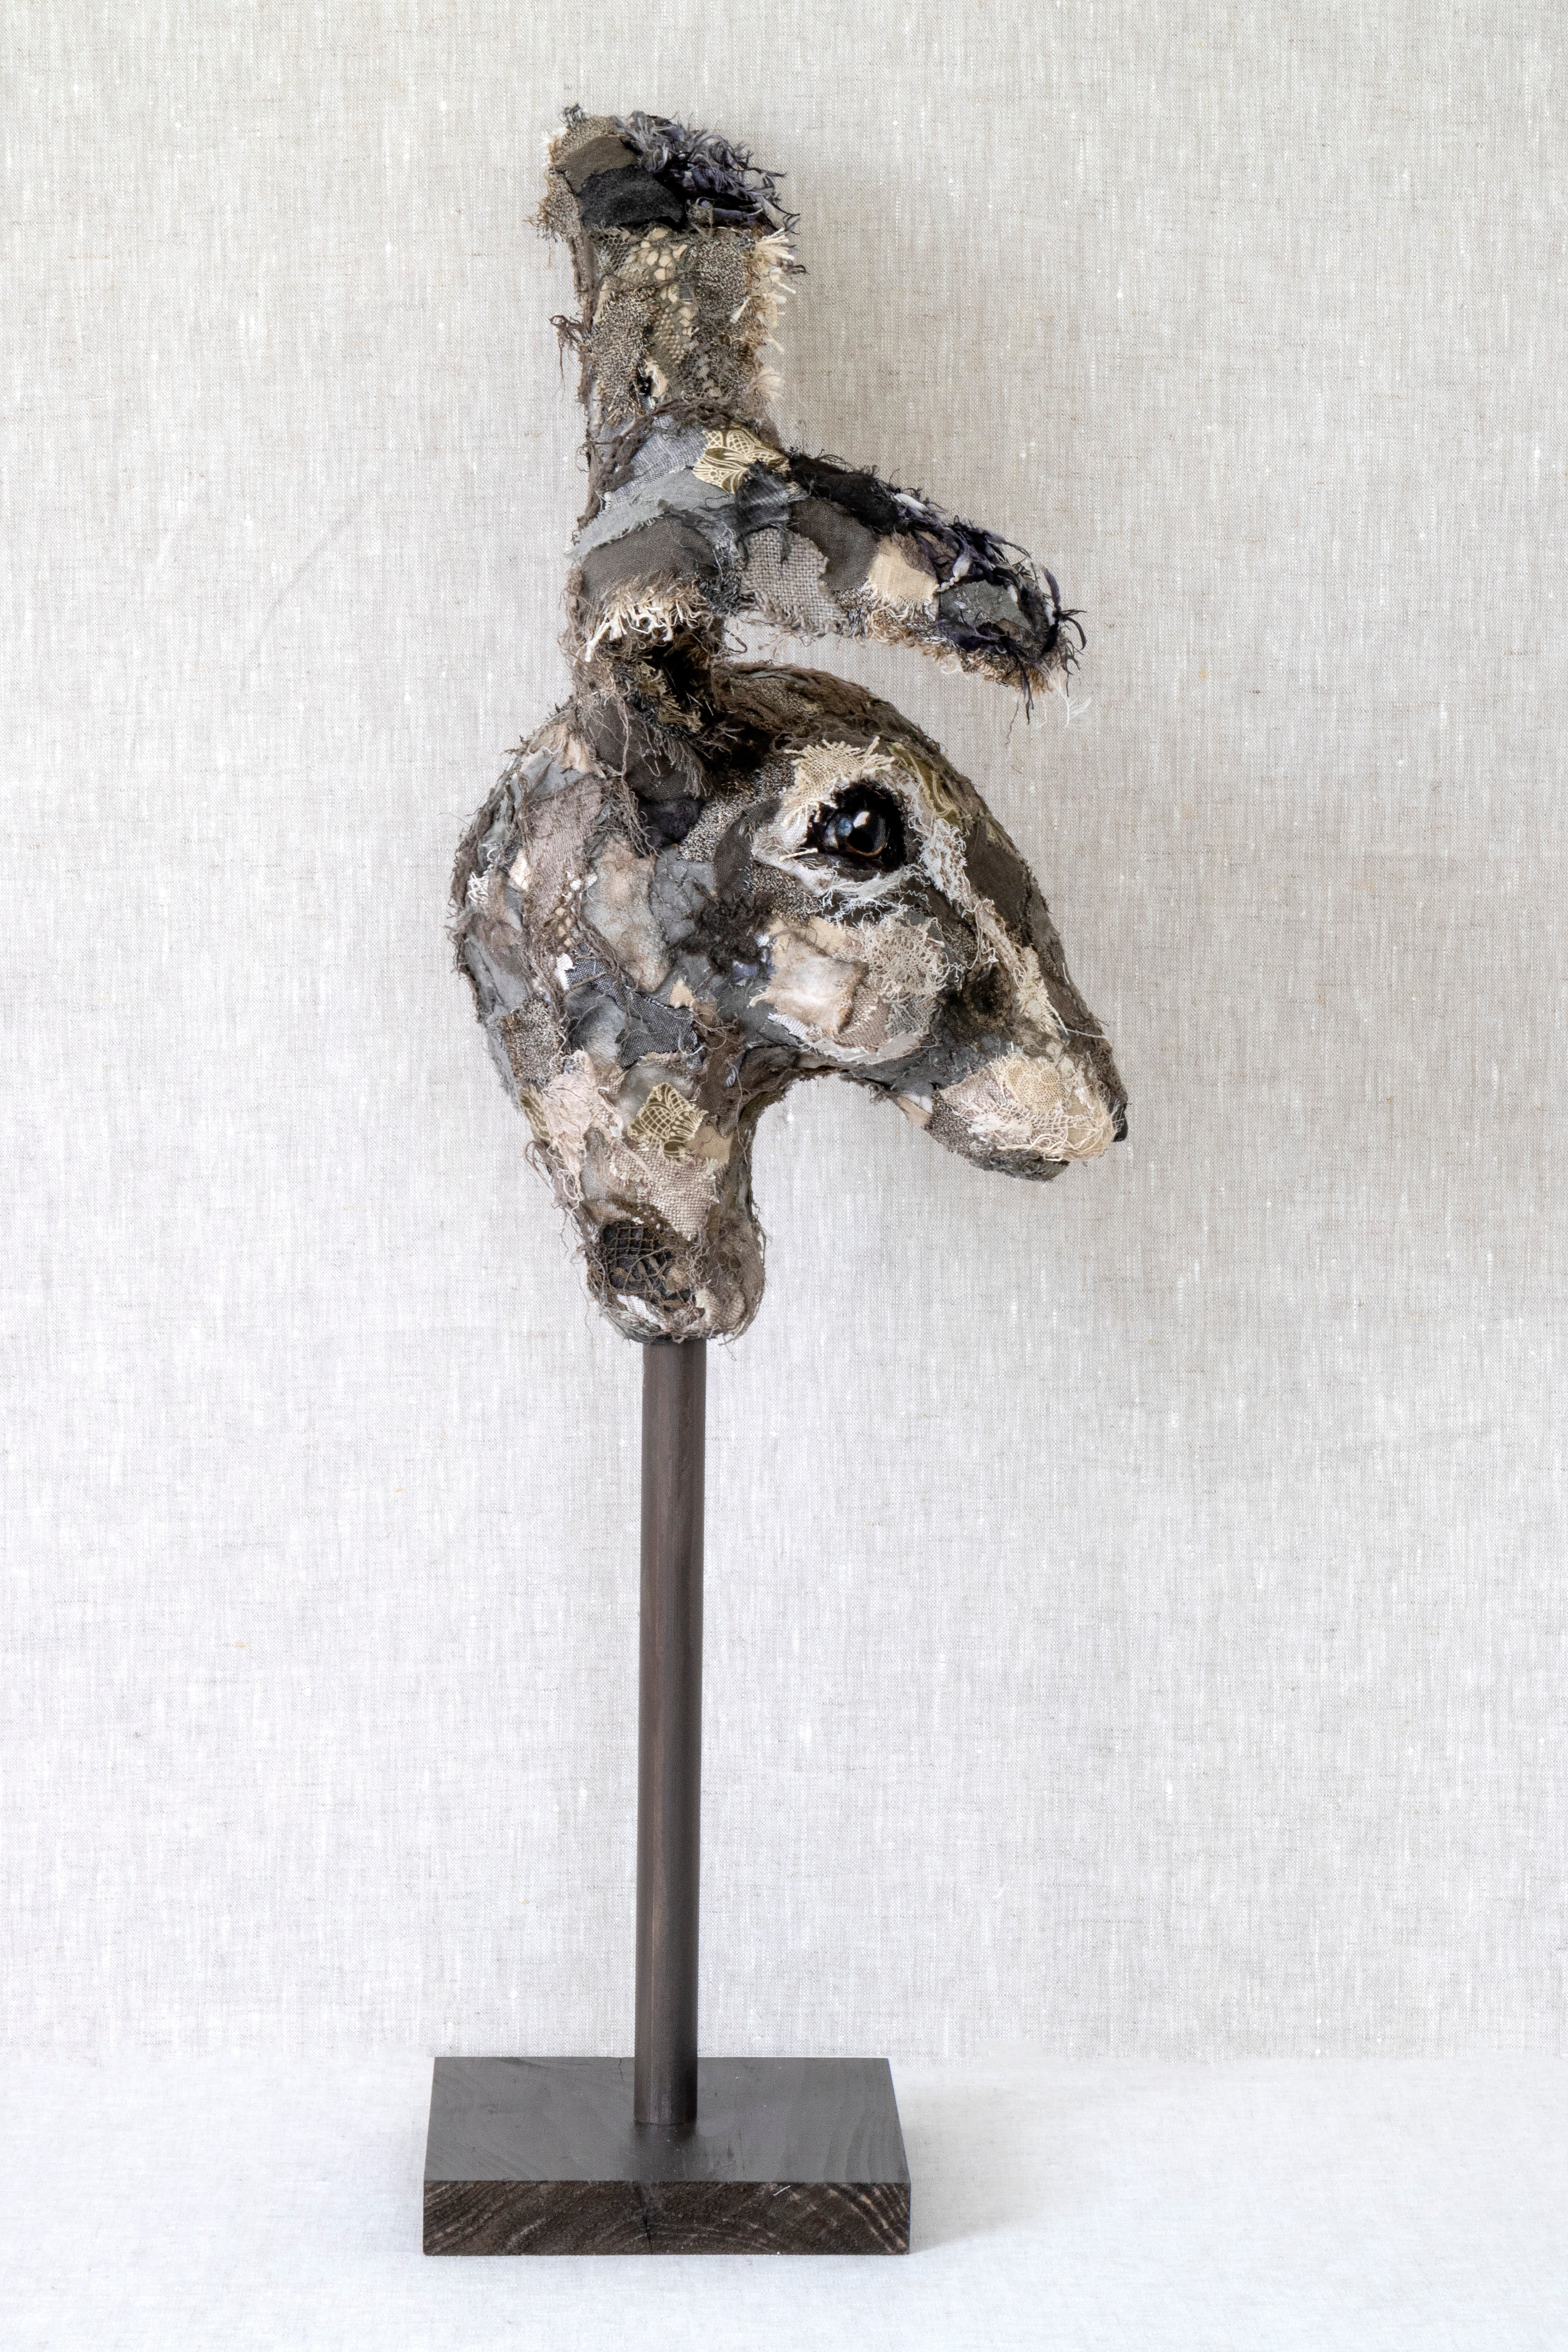 Mister Lester Lister  Hare - Sculpture - SOLD